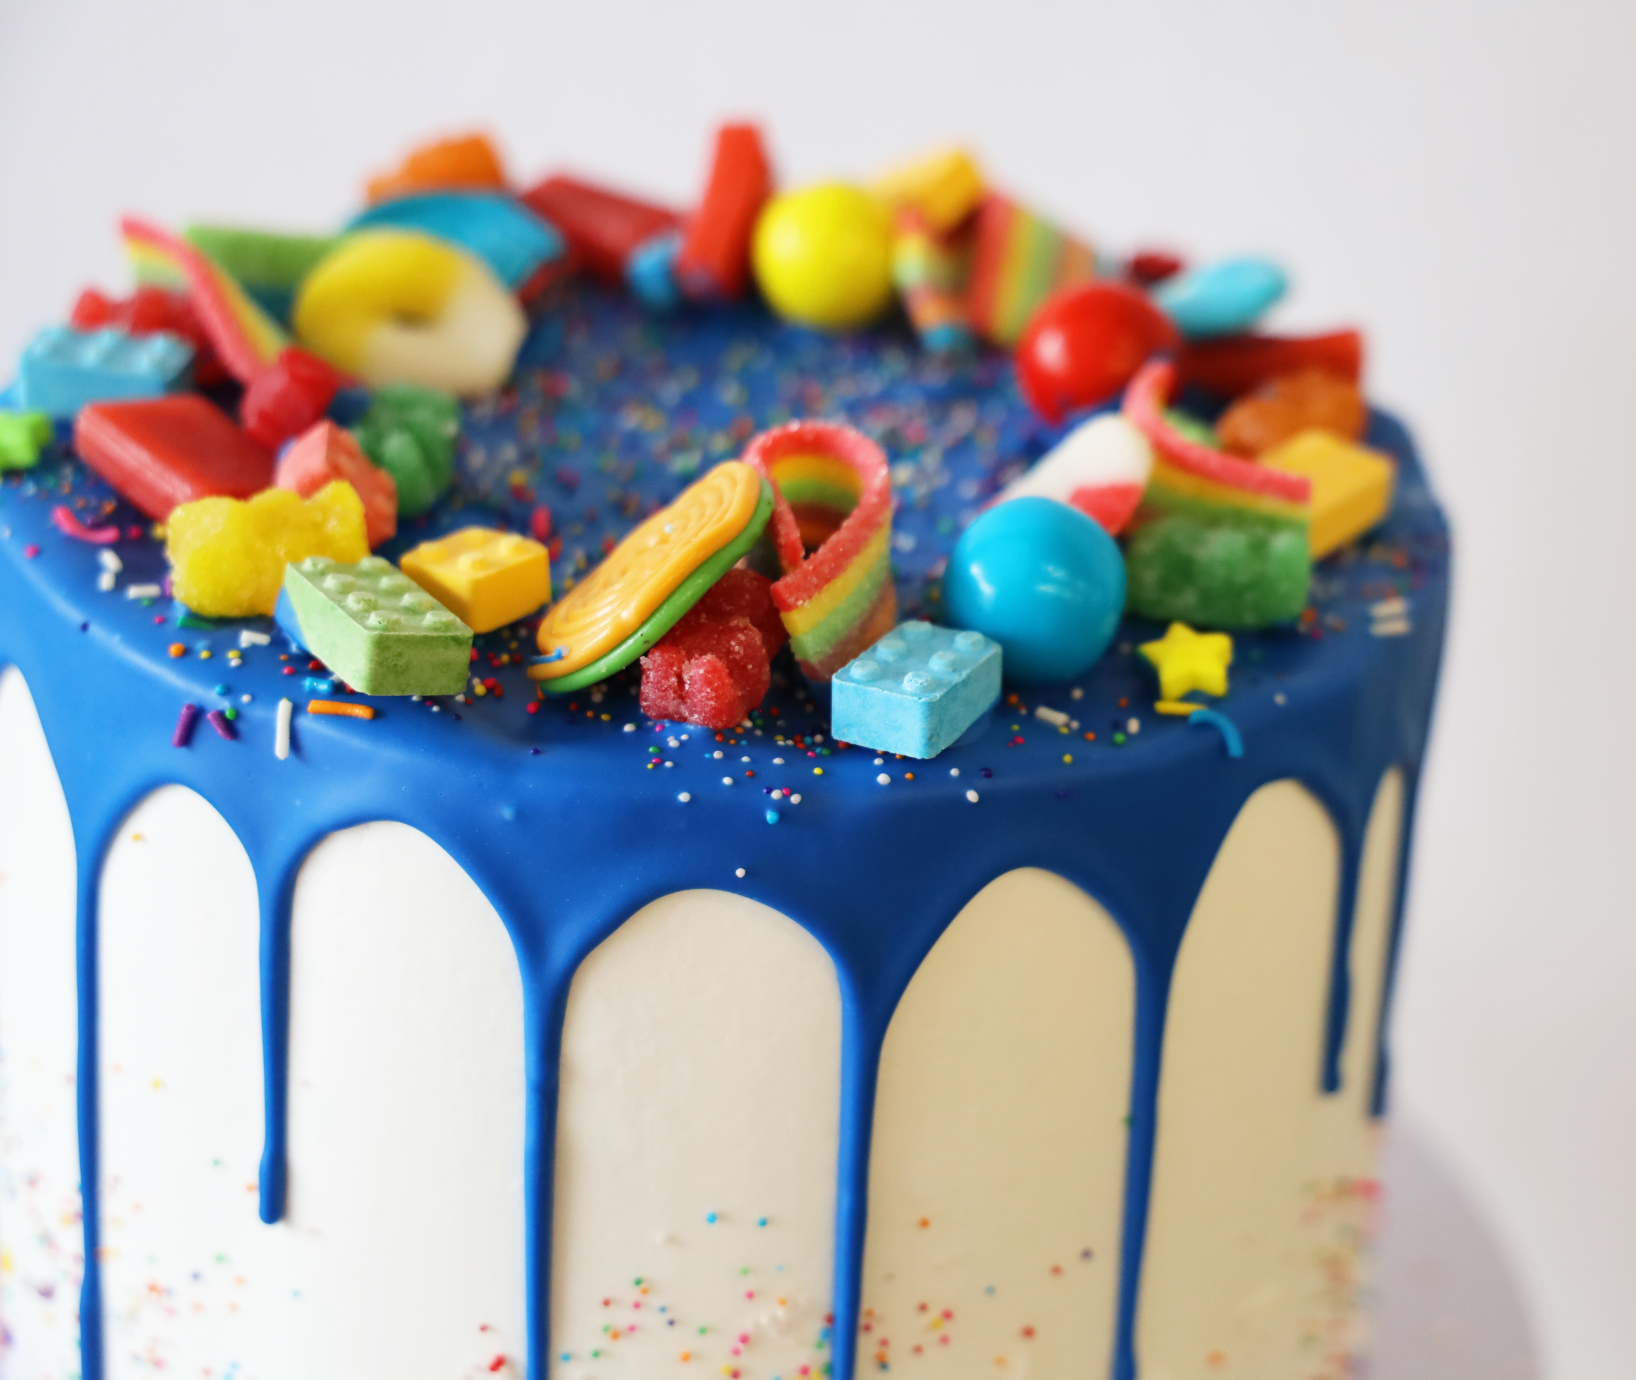 Rainbow Candy Celebration Cake